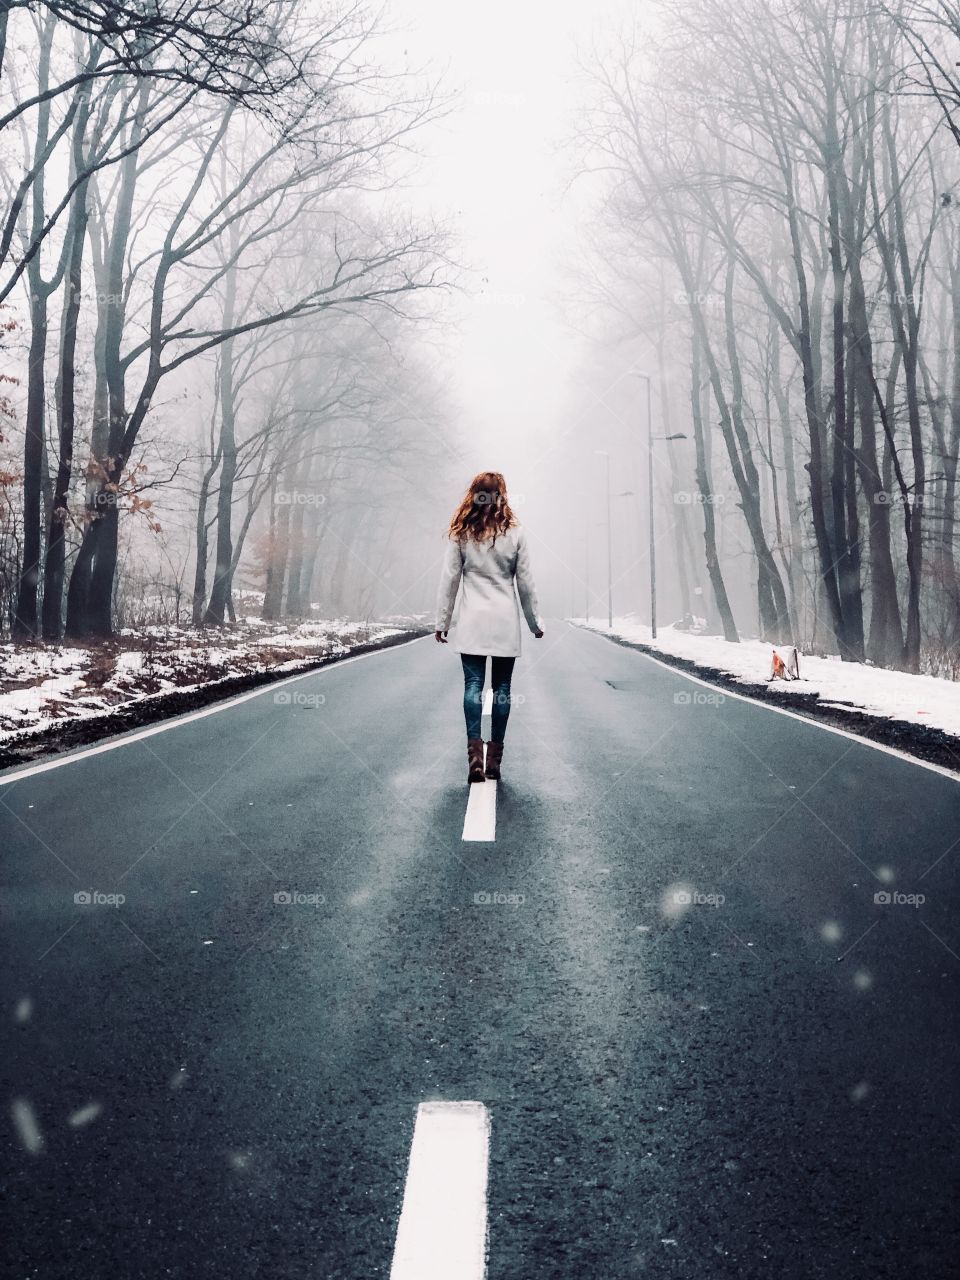 Walking down the frosty roads.